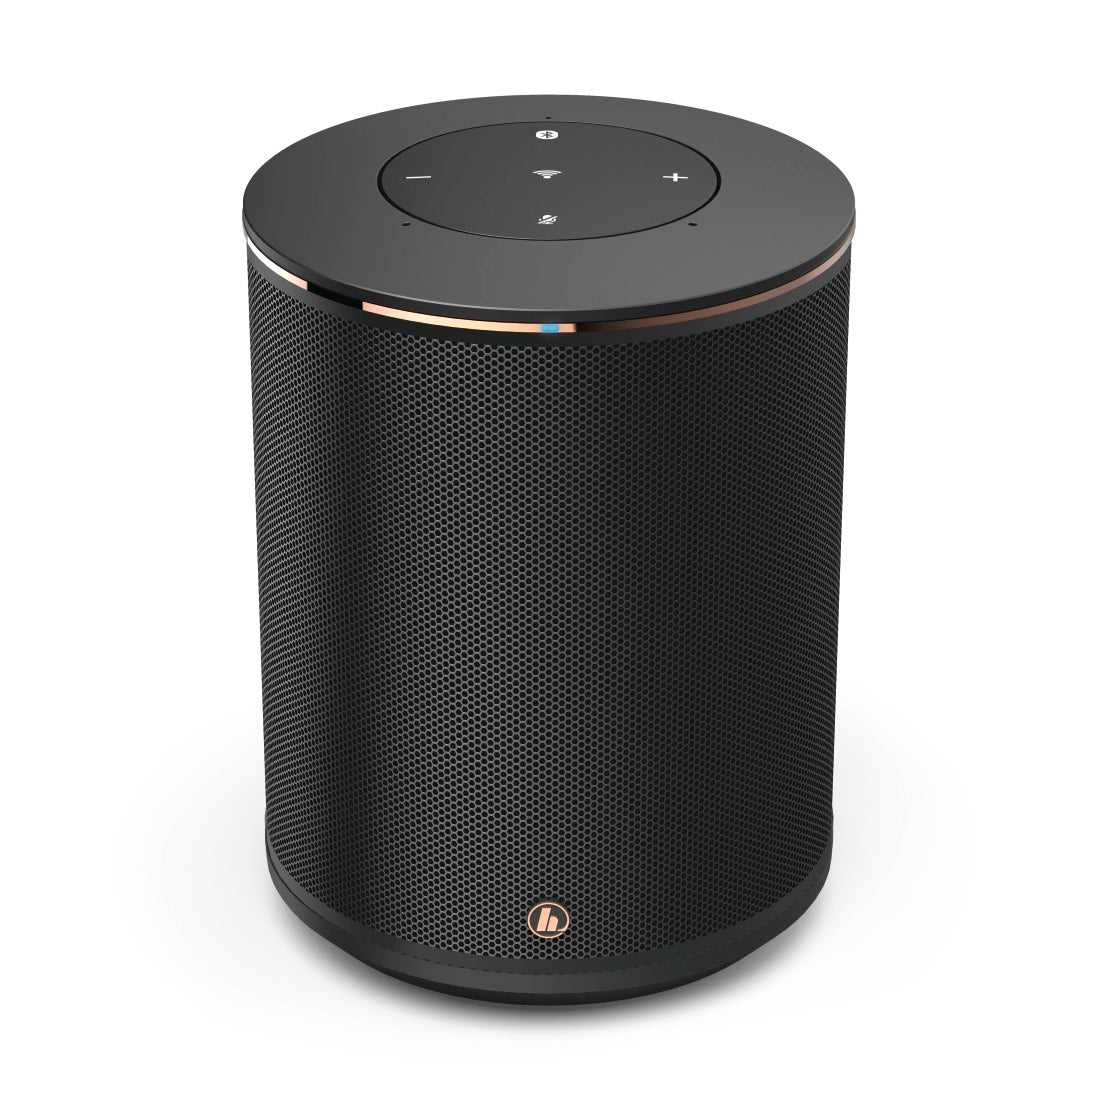 Hama Smart-speaker "SIRIUM1400ABT", Alexa/Bluetooth®